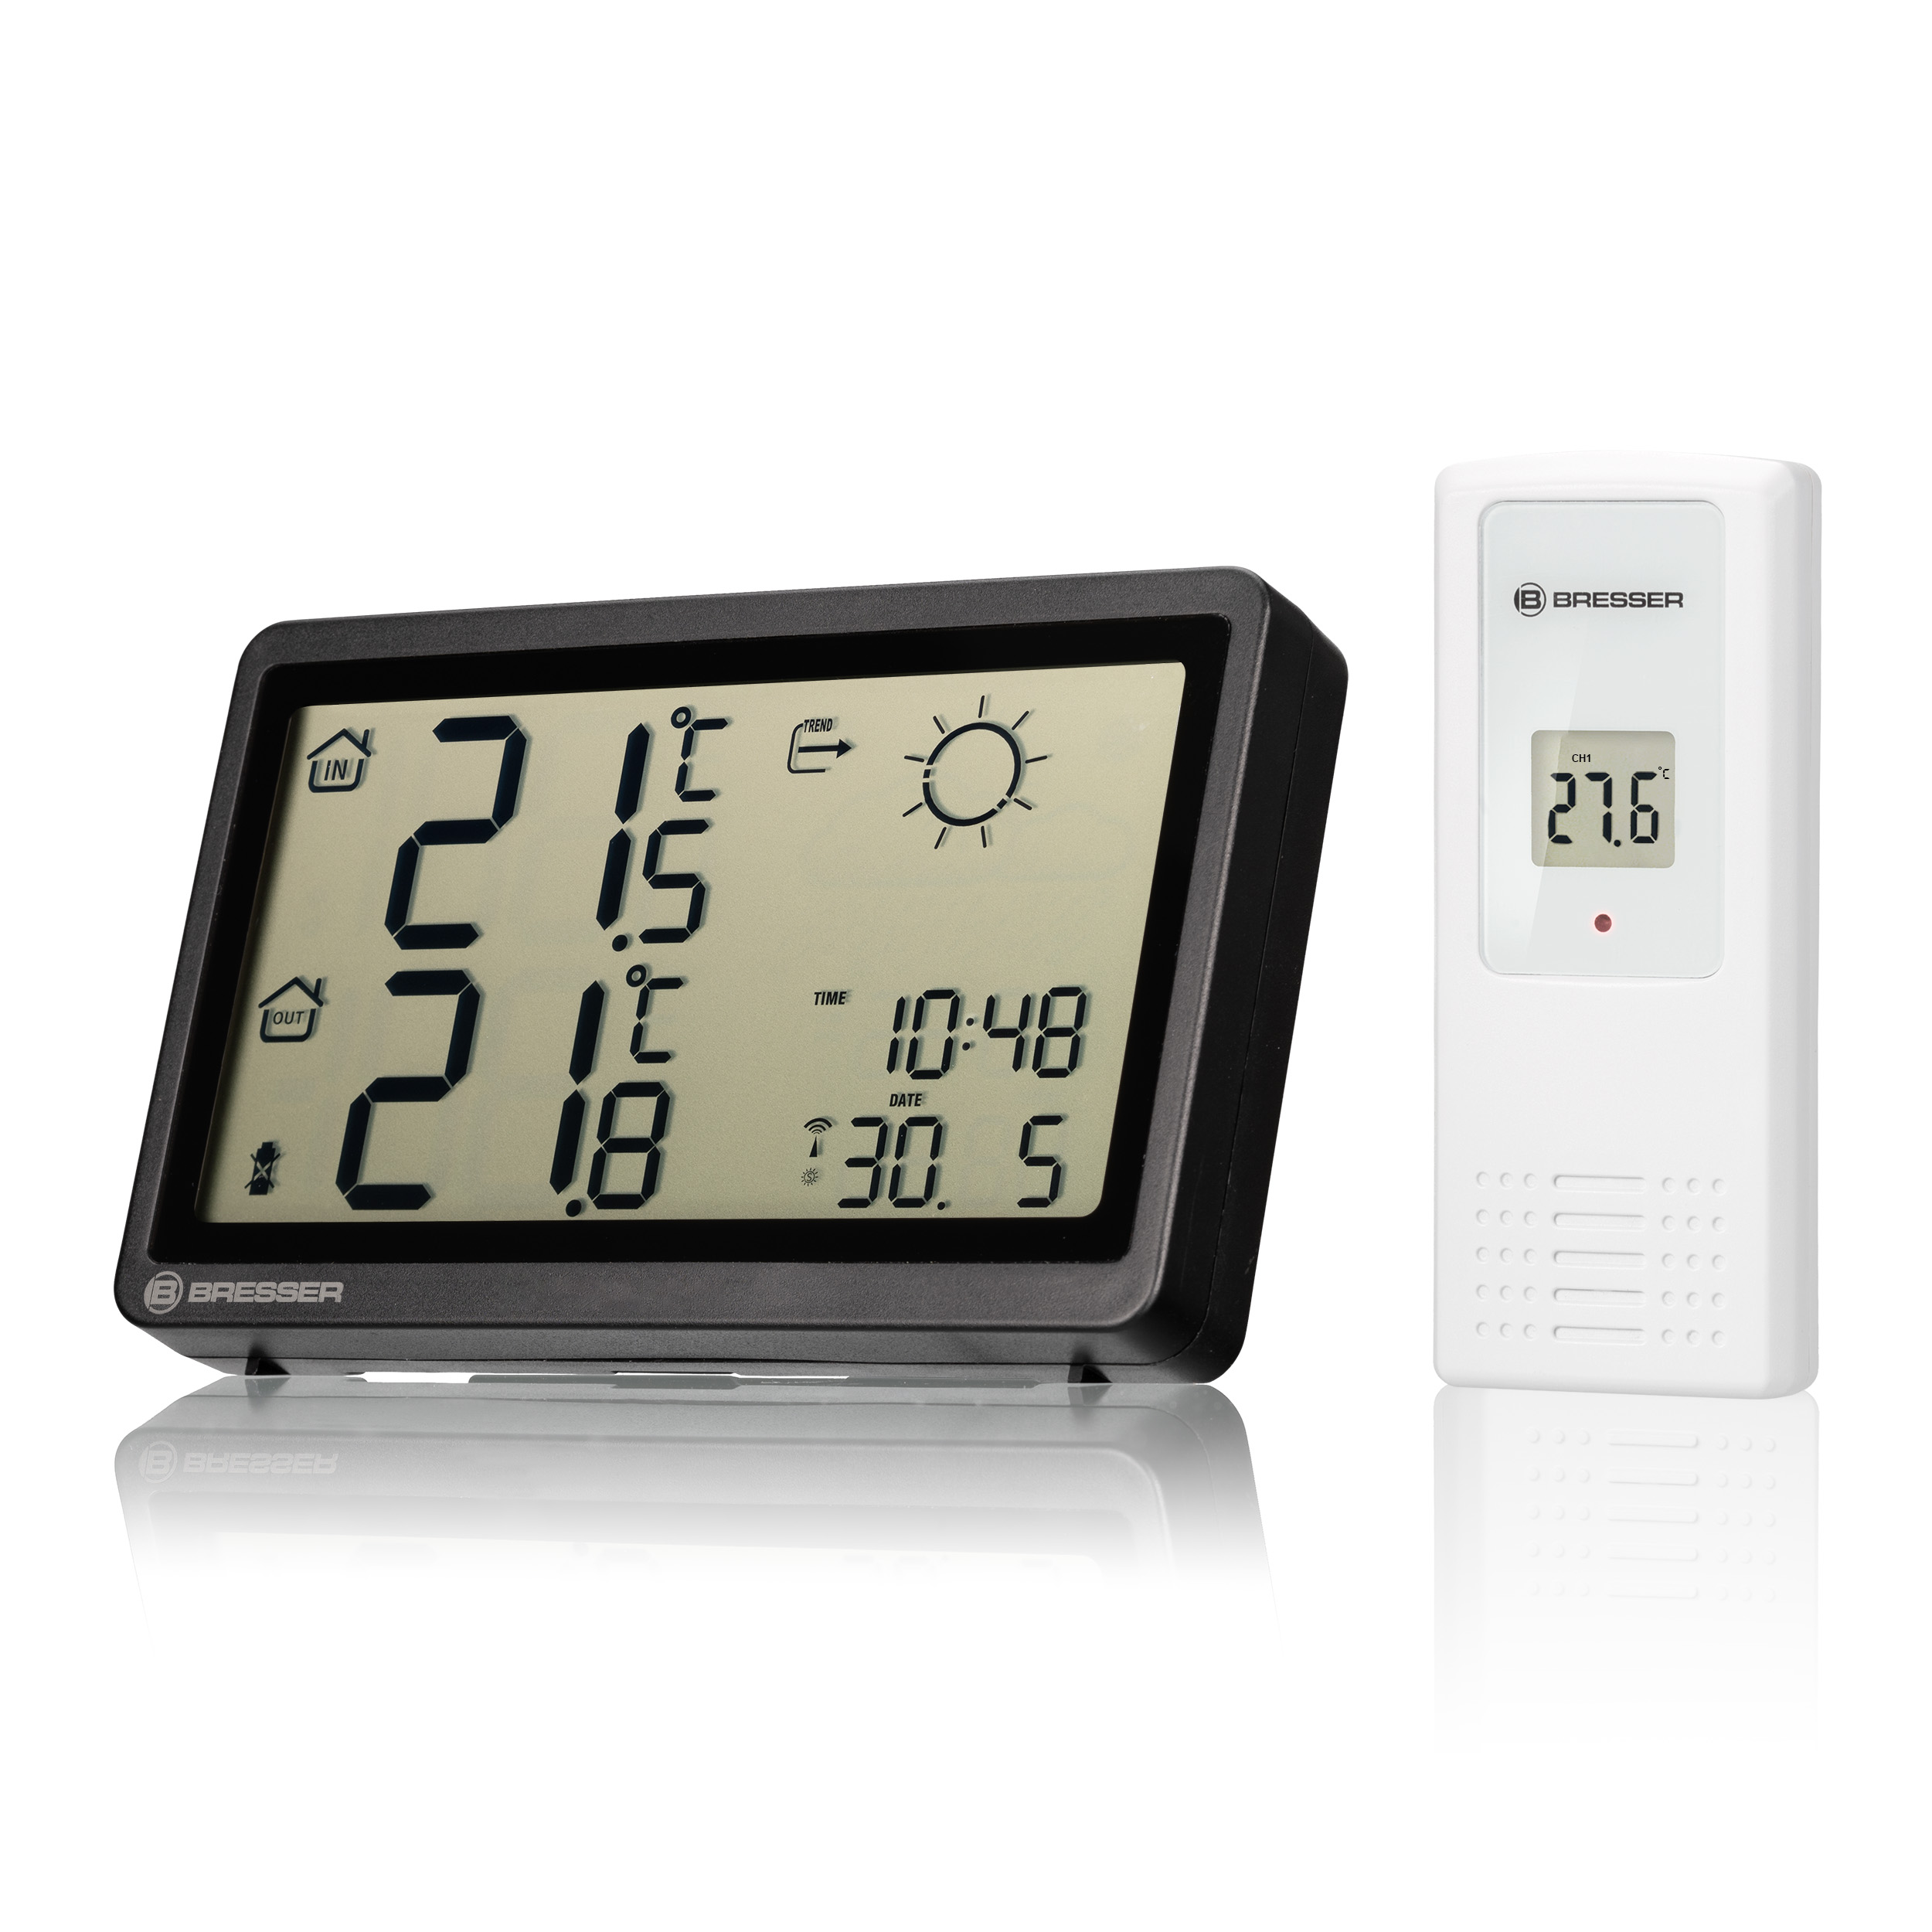 Station de température sans fil avec temps Noir,Hygromètre/thermomètre  intérieur/extérieur thermomètre mural haute précisi